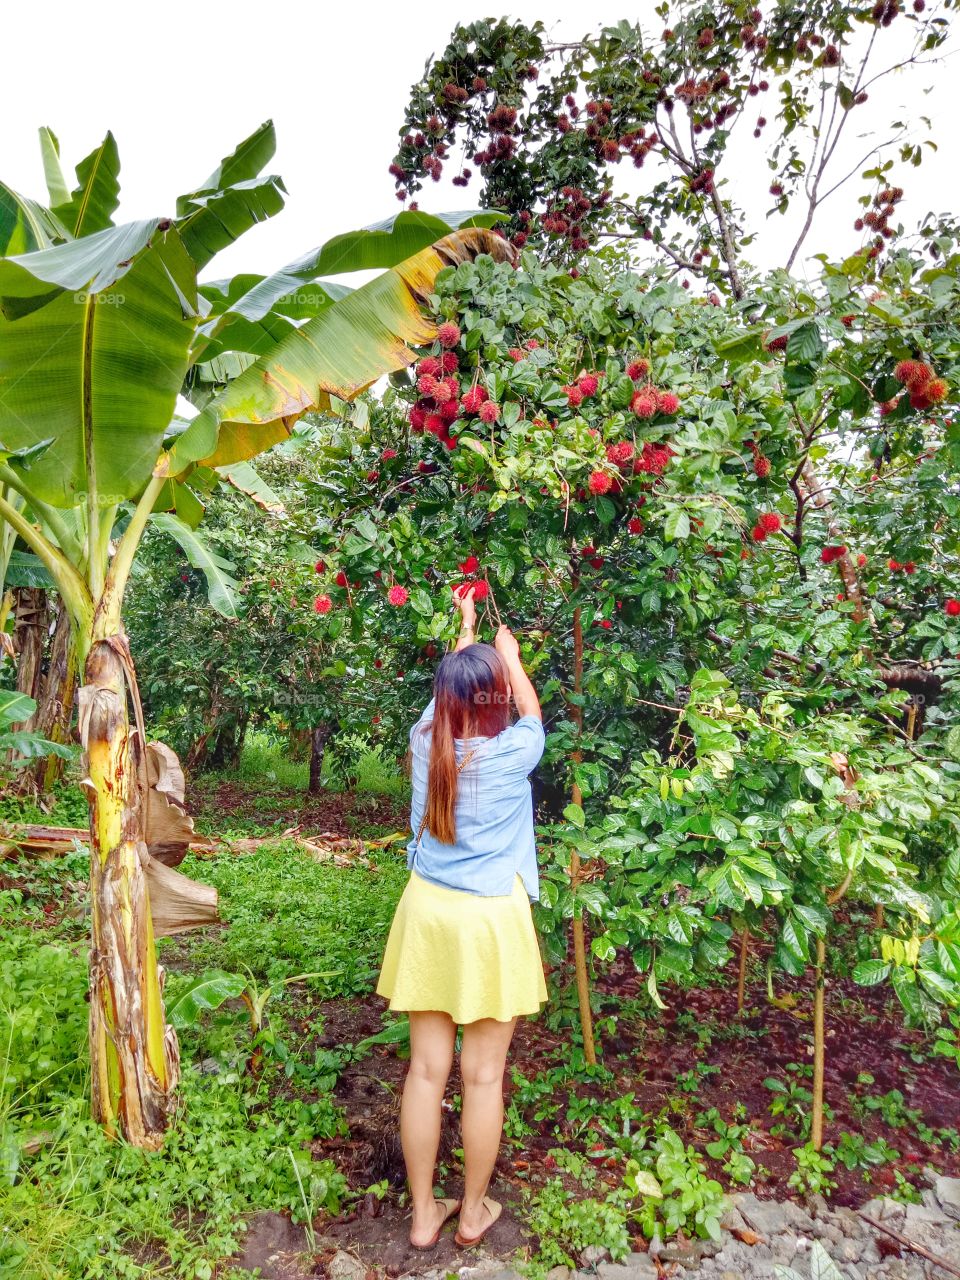 picking some fruits.